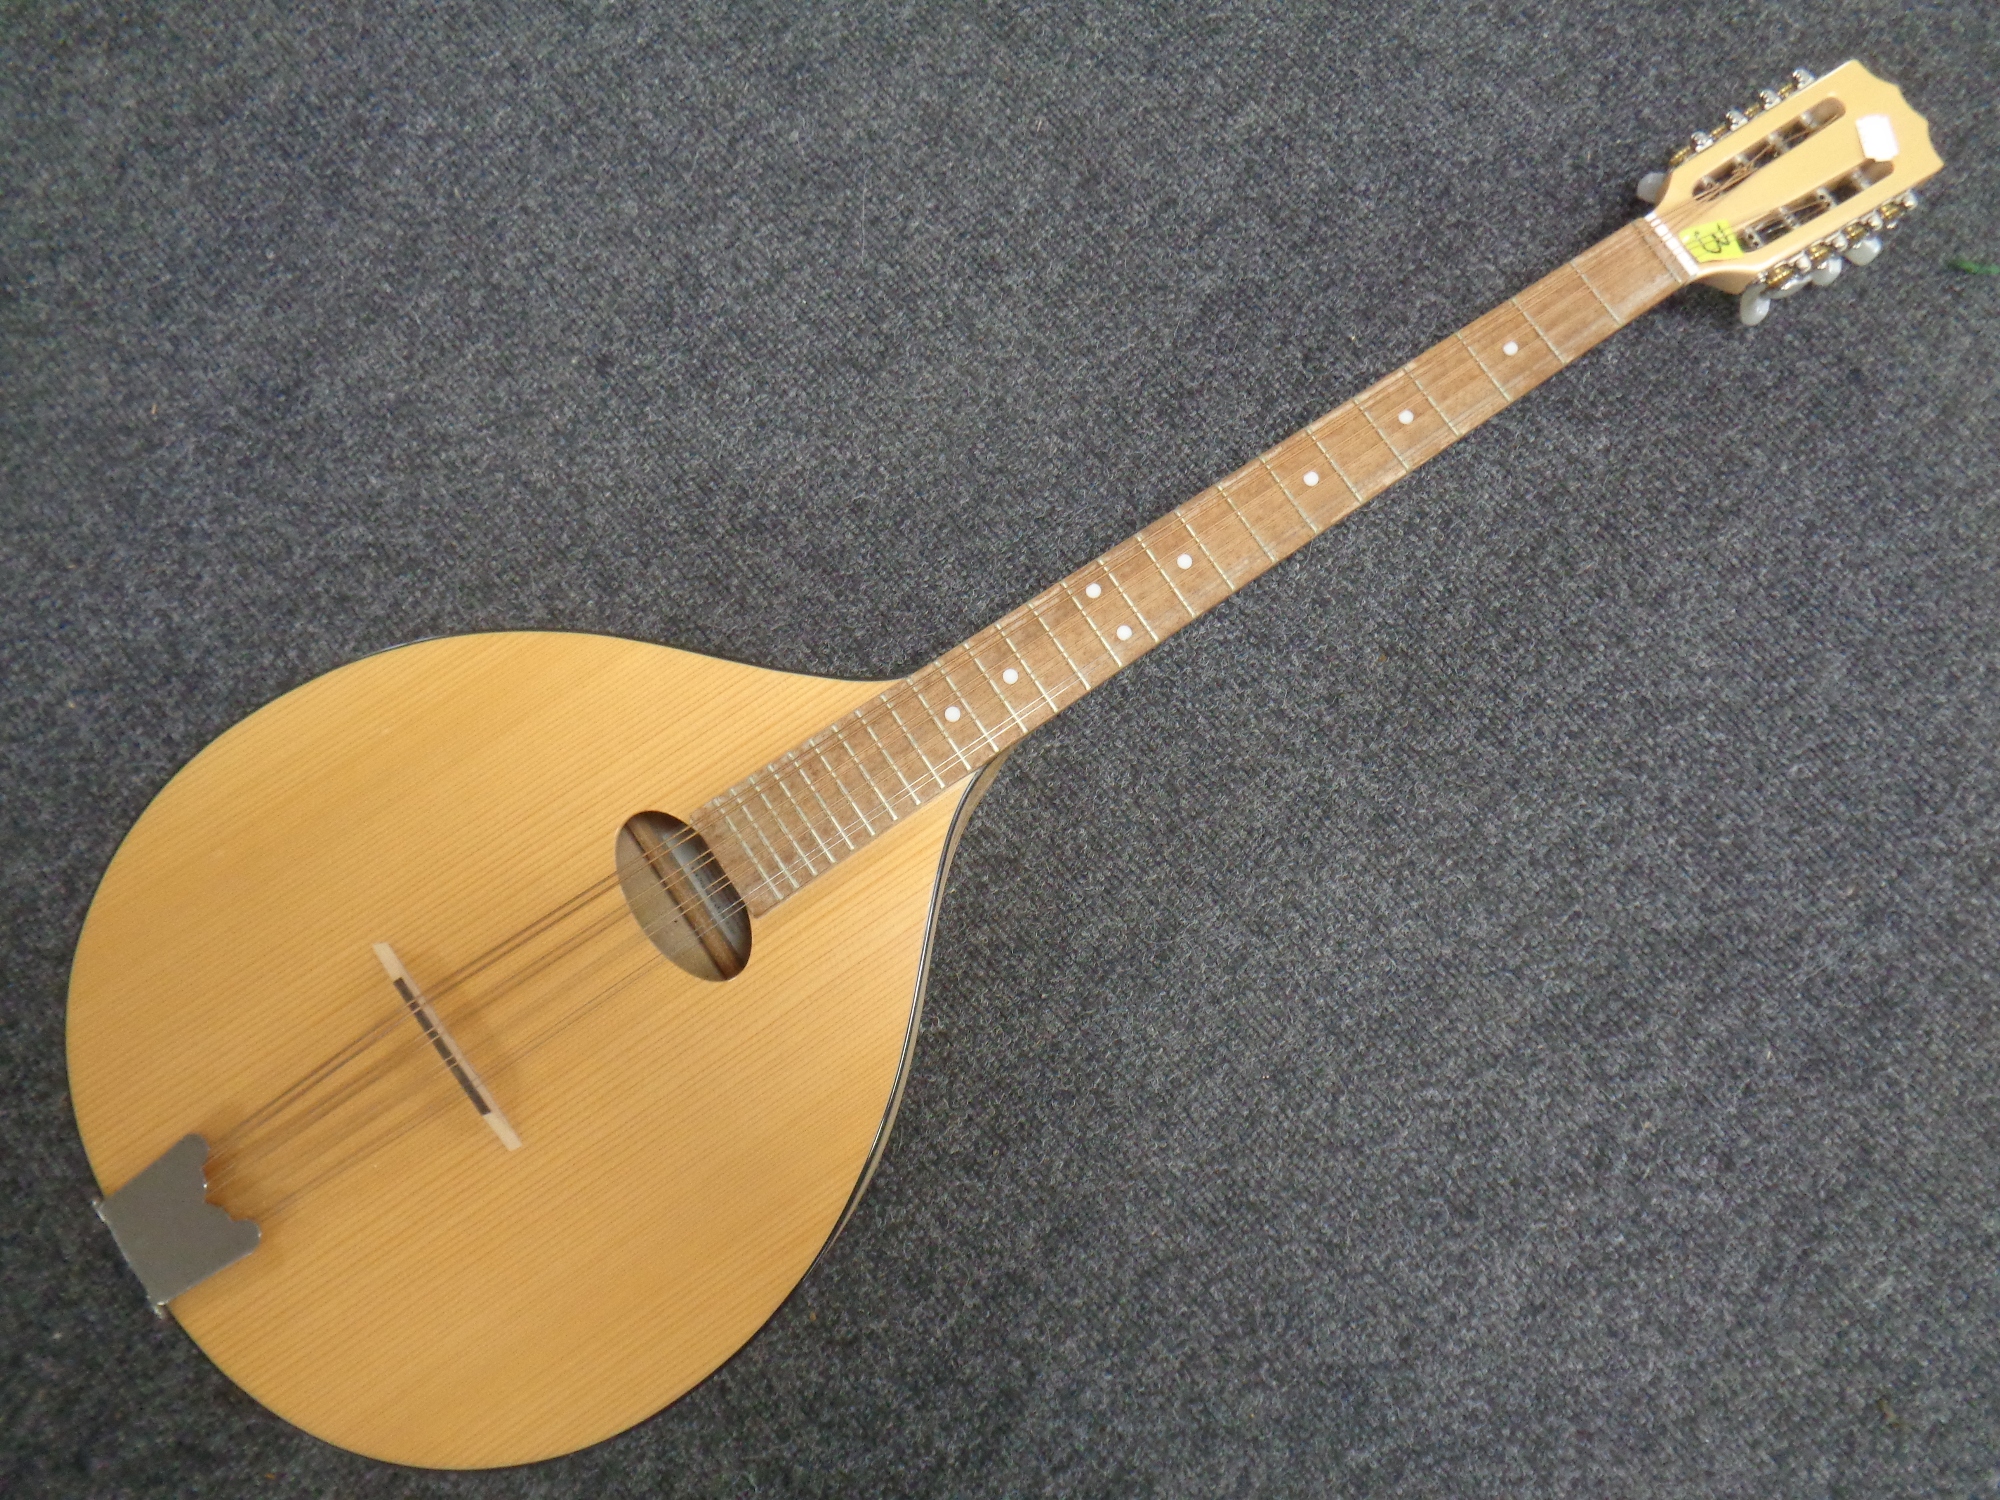 A Troubadour mandolin